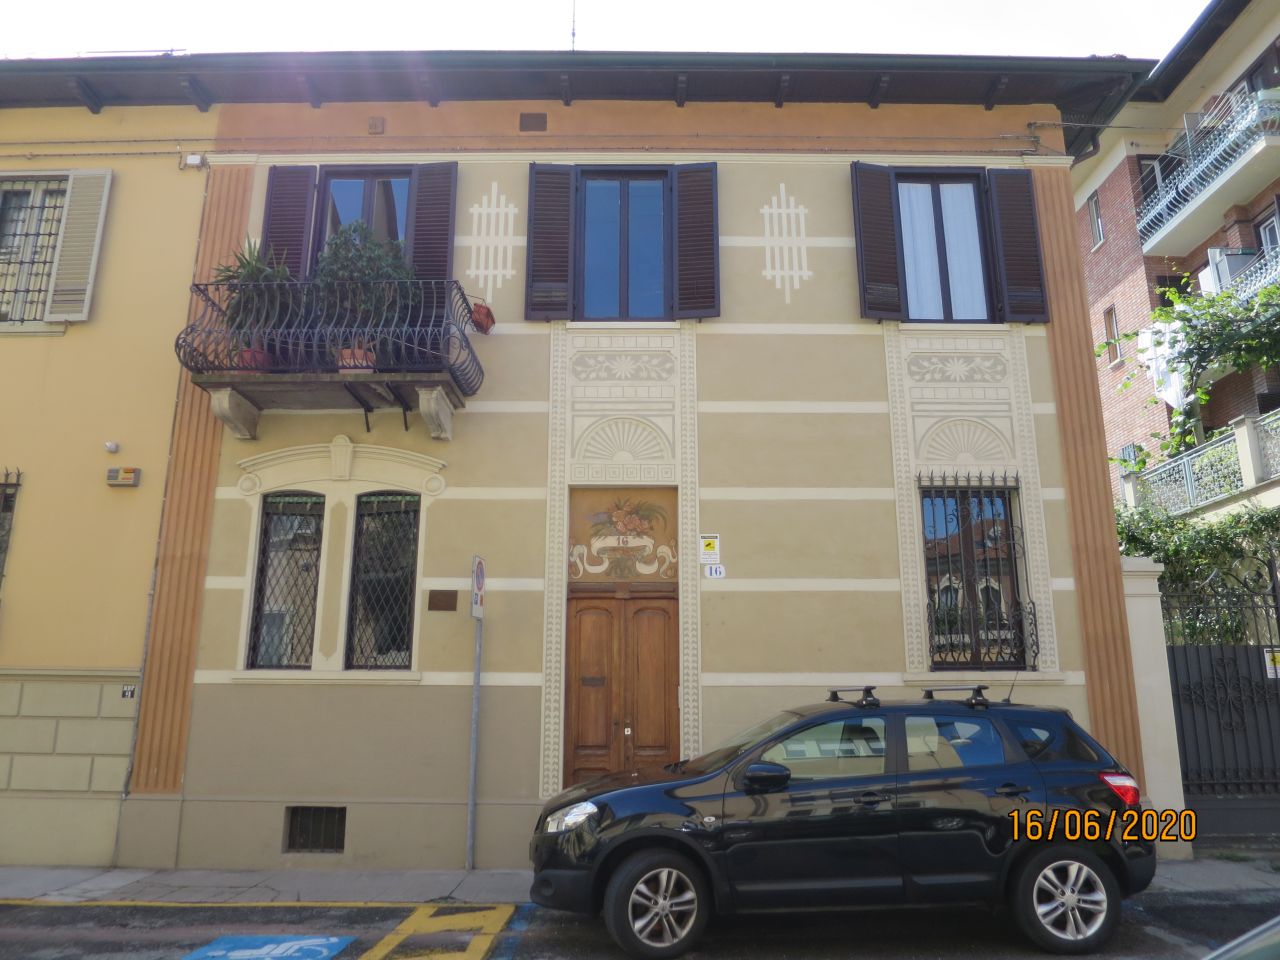 [Casa privata in via Martiri della Libertà, 16] (casa) - Torino (TO) 